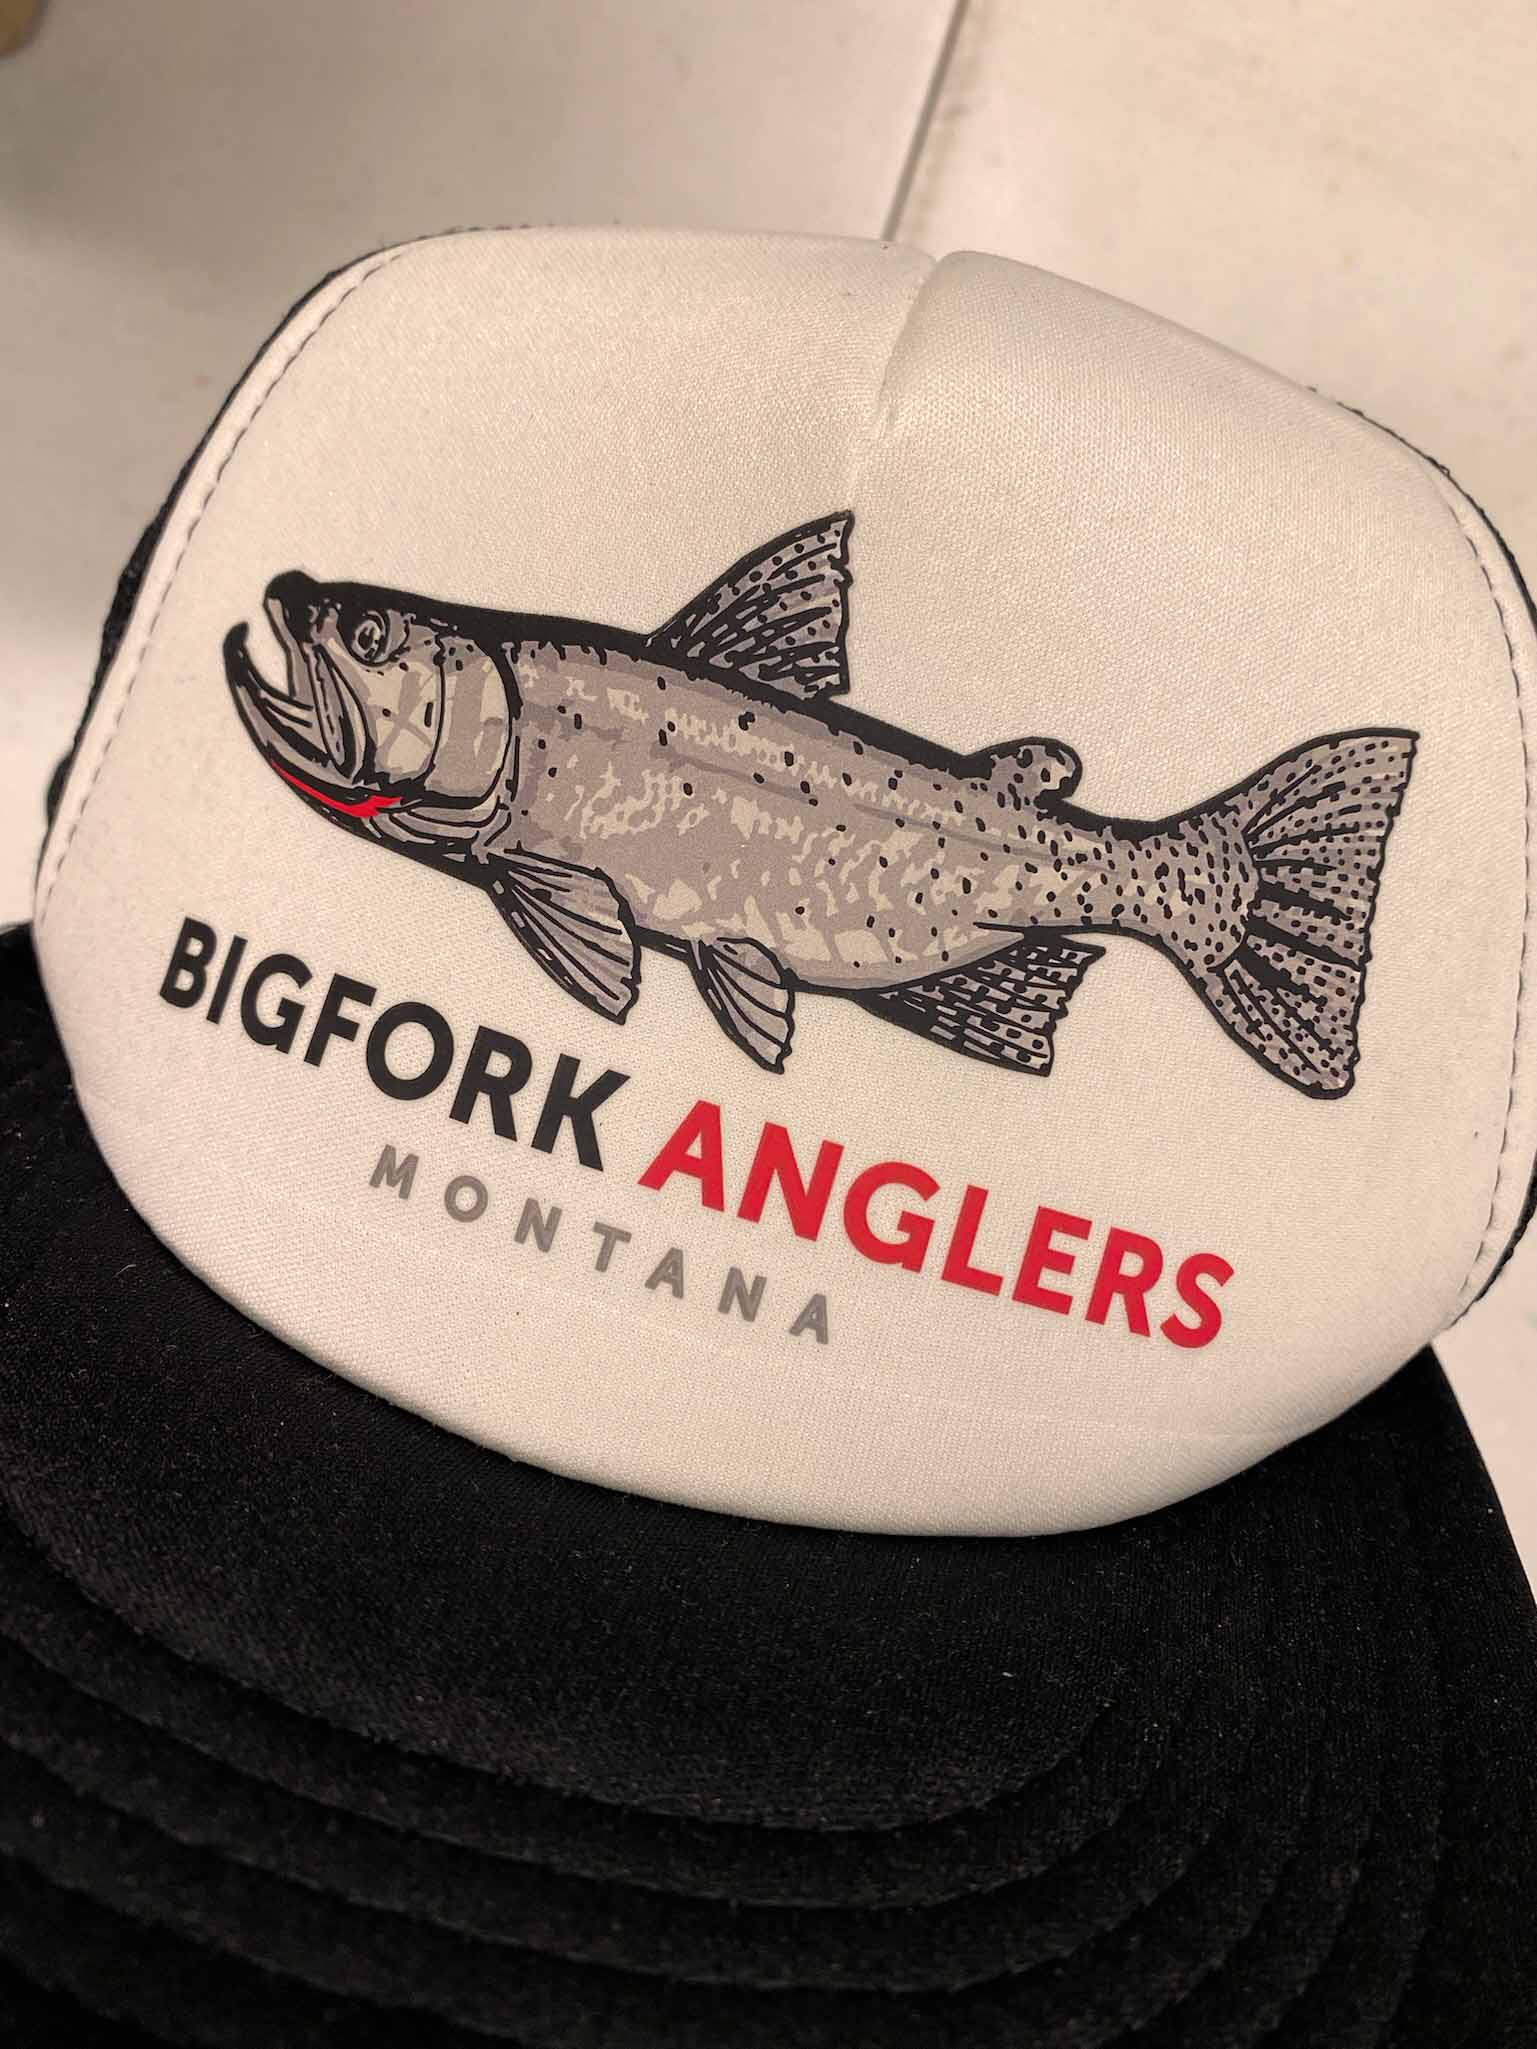 Custom hat for Bigfork Anglers in Montana